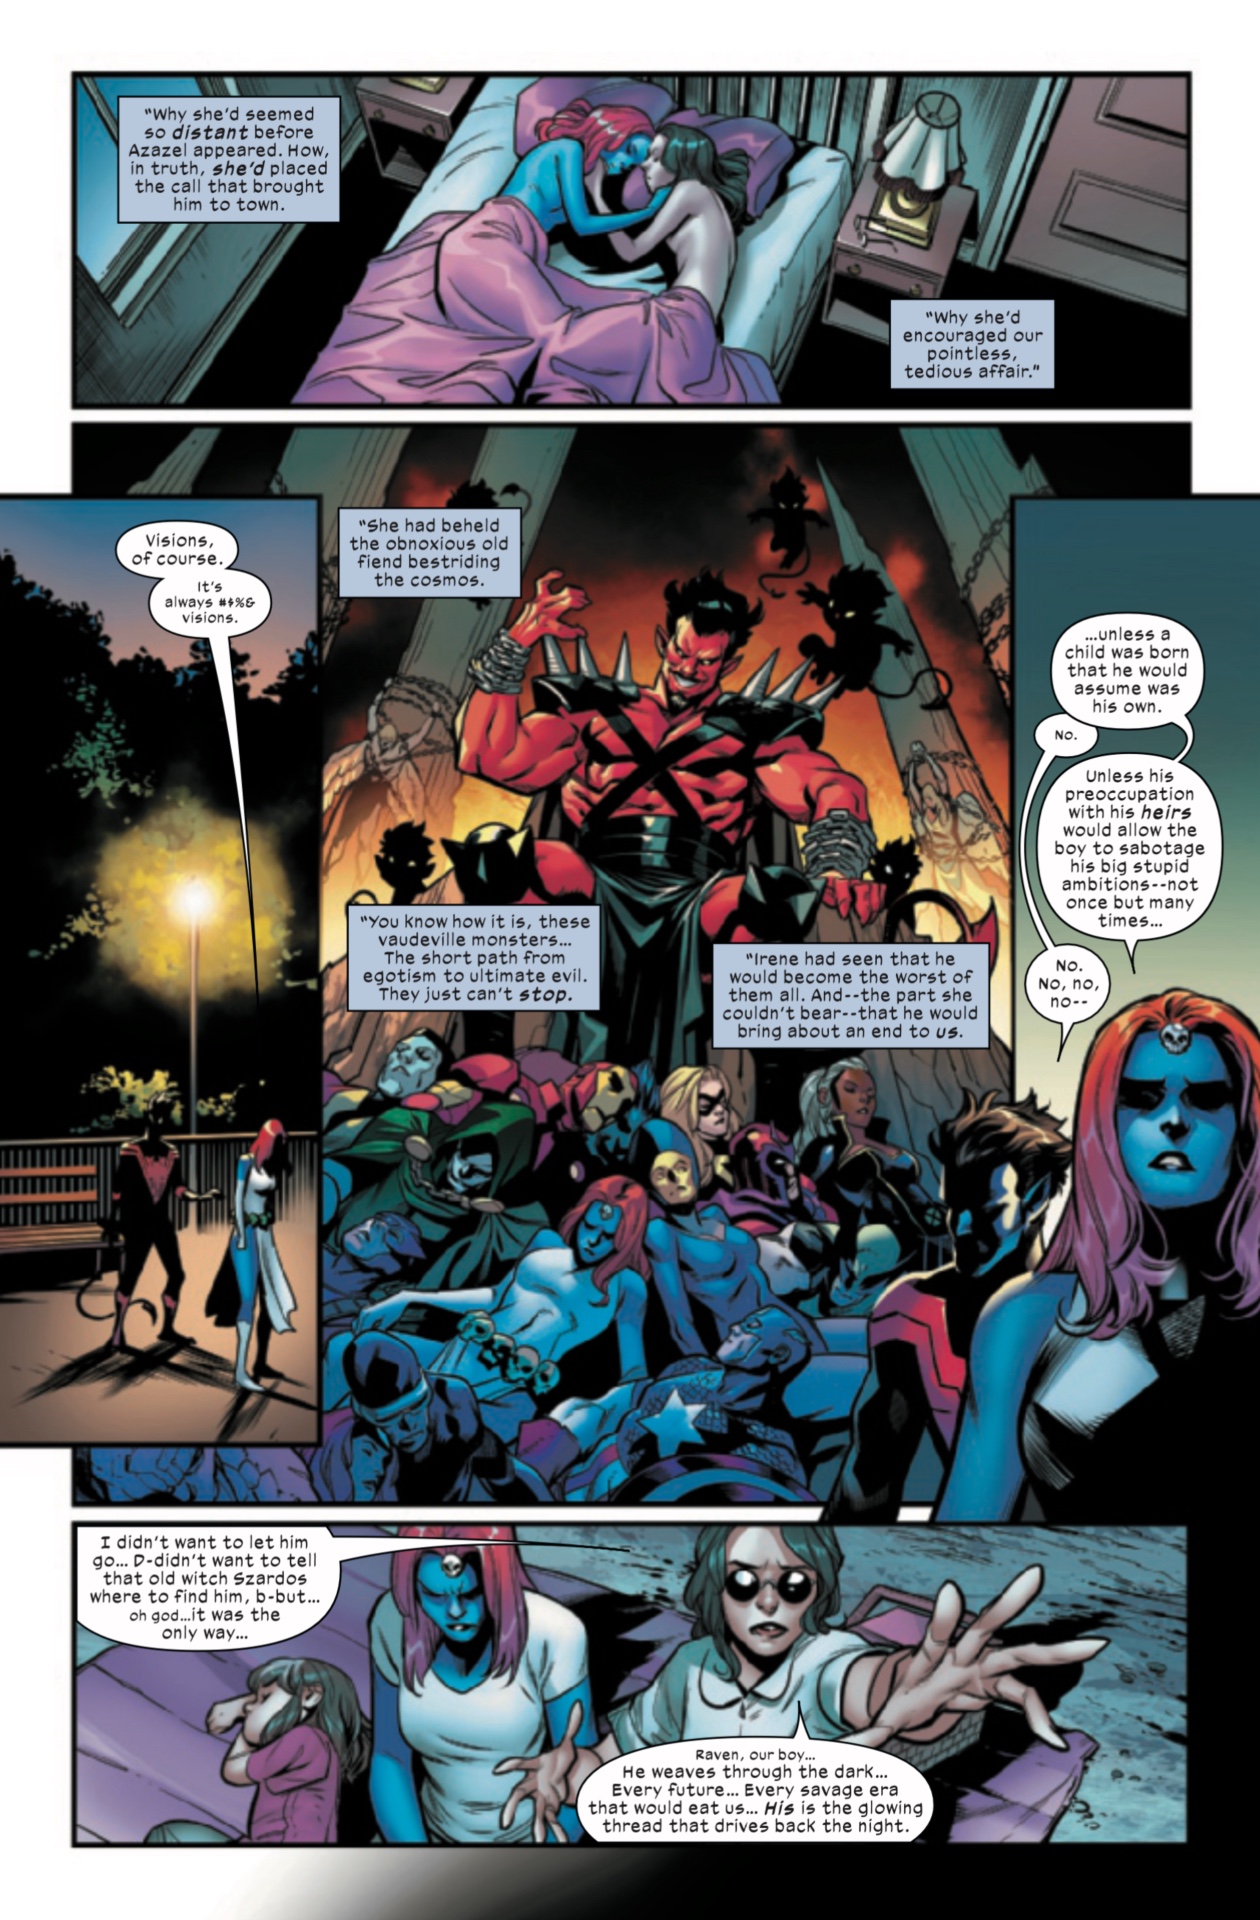 Marvel только что переосмыслила отношения Ночного Змея и Мистик в самом стиле Людей Икс.